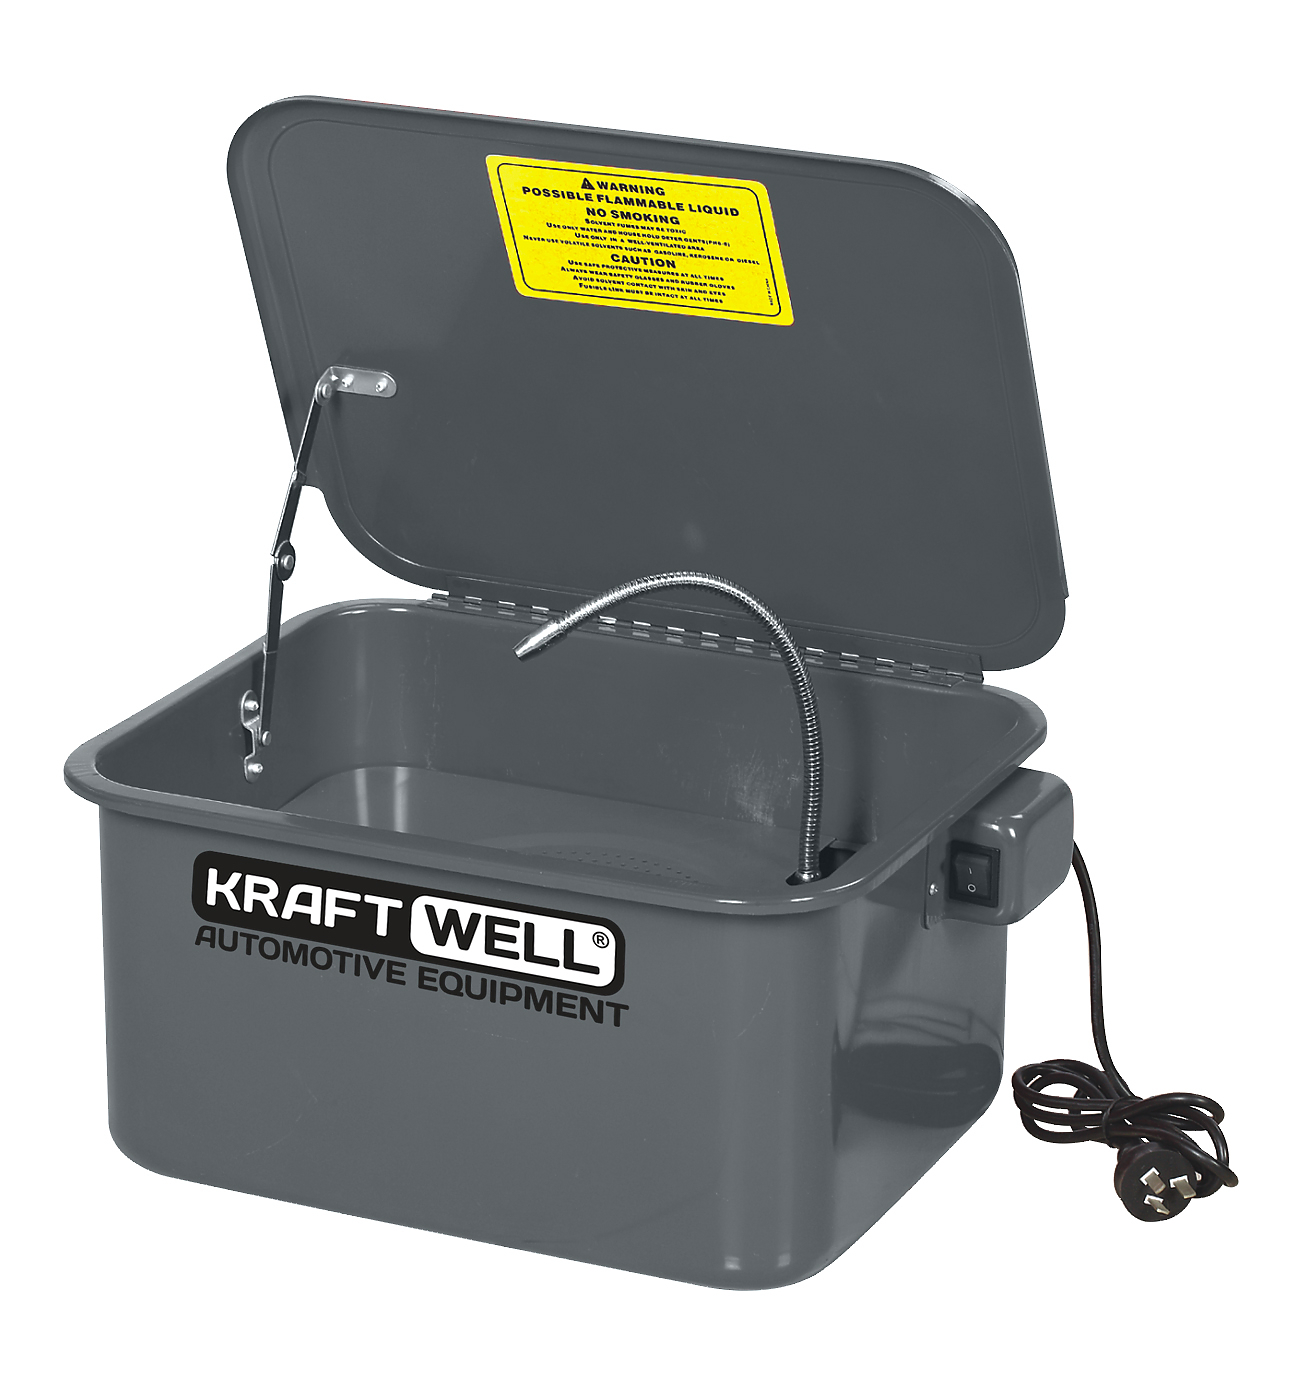 KRW-PW19 Установка для мойки деталей настольная электрическая, 19 л KraftWell